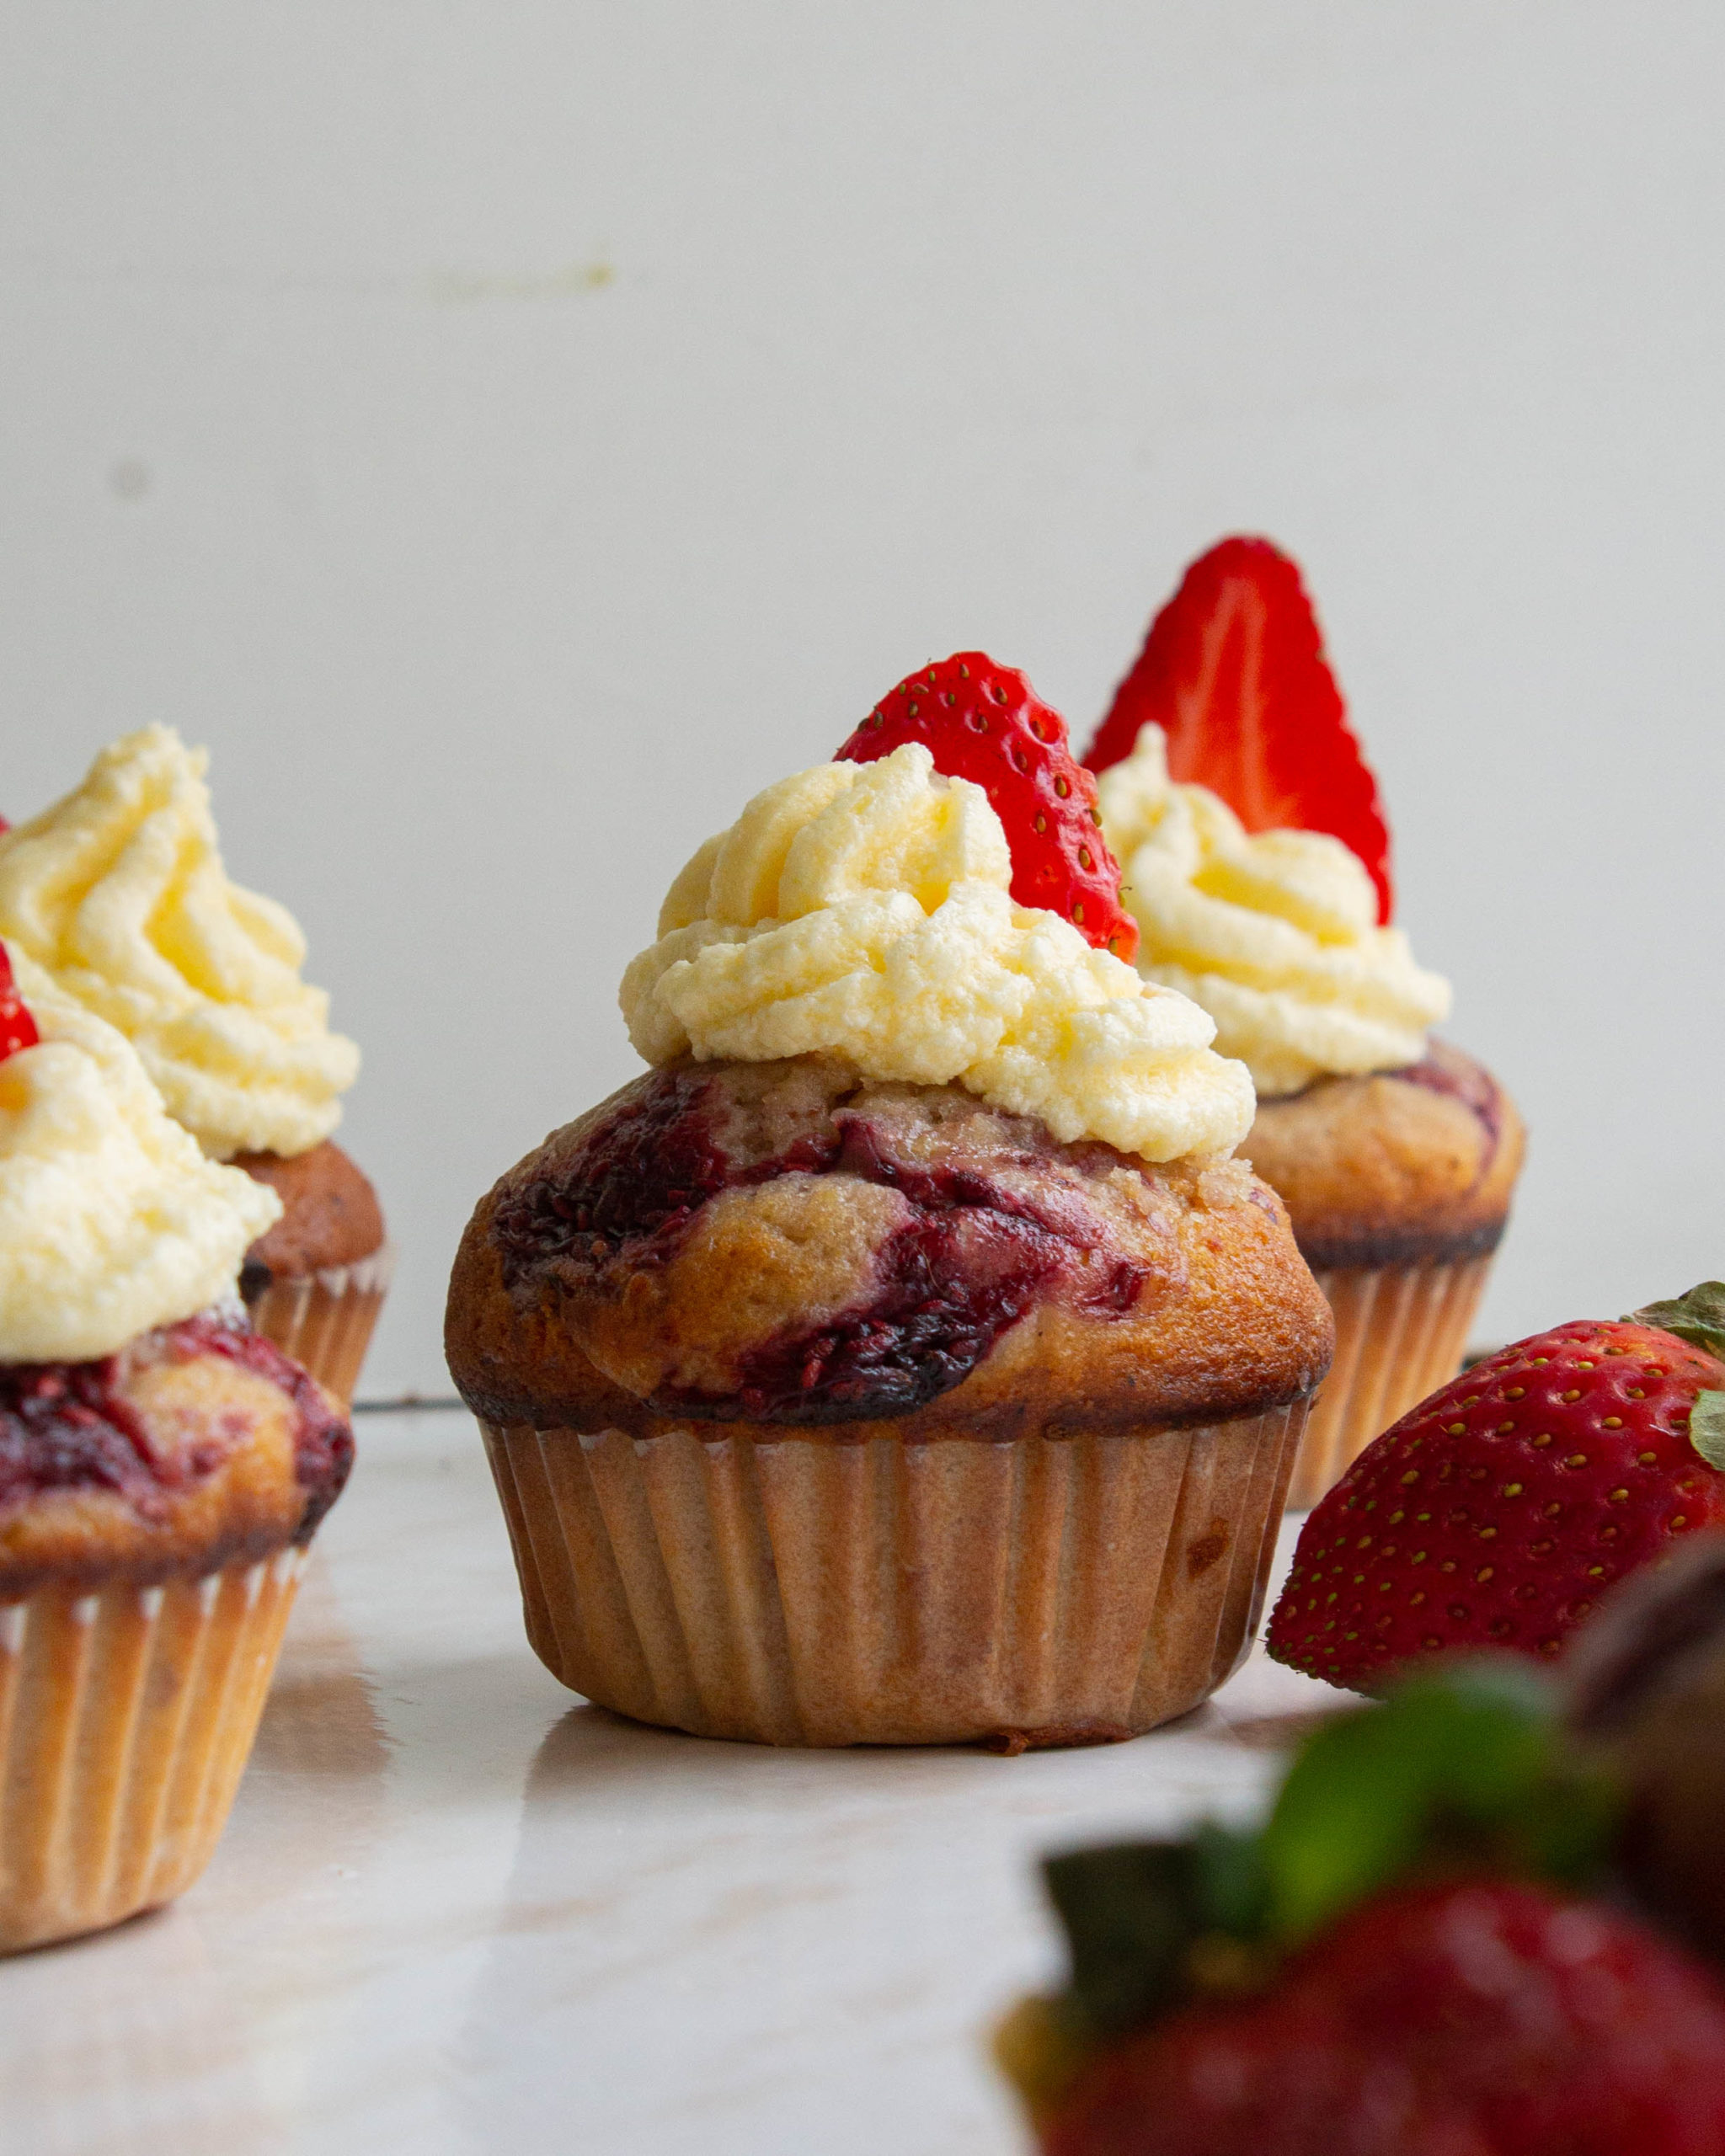 Strawberry Jam Cupcakes
